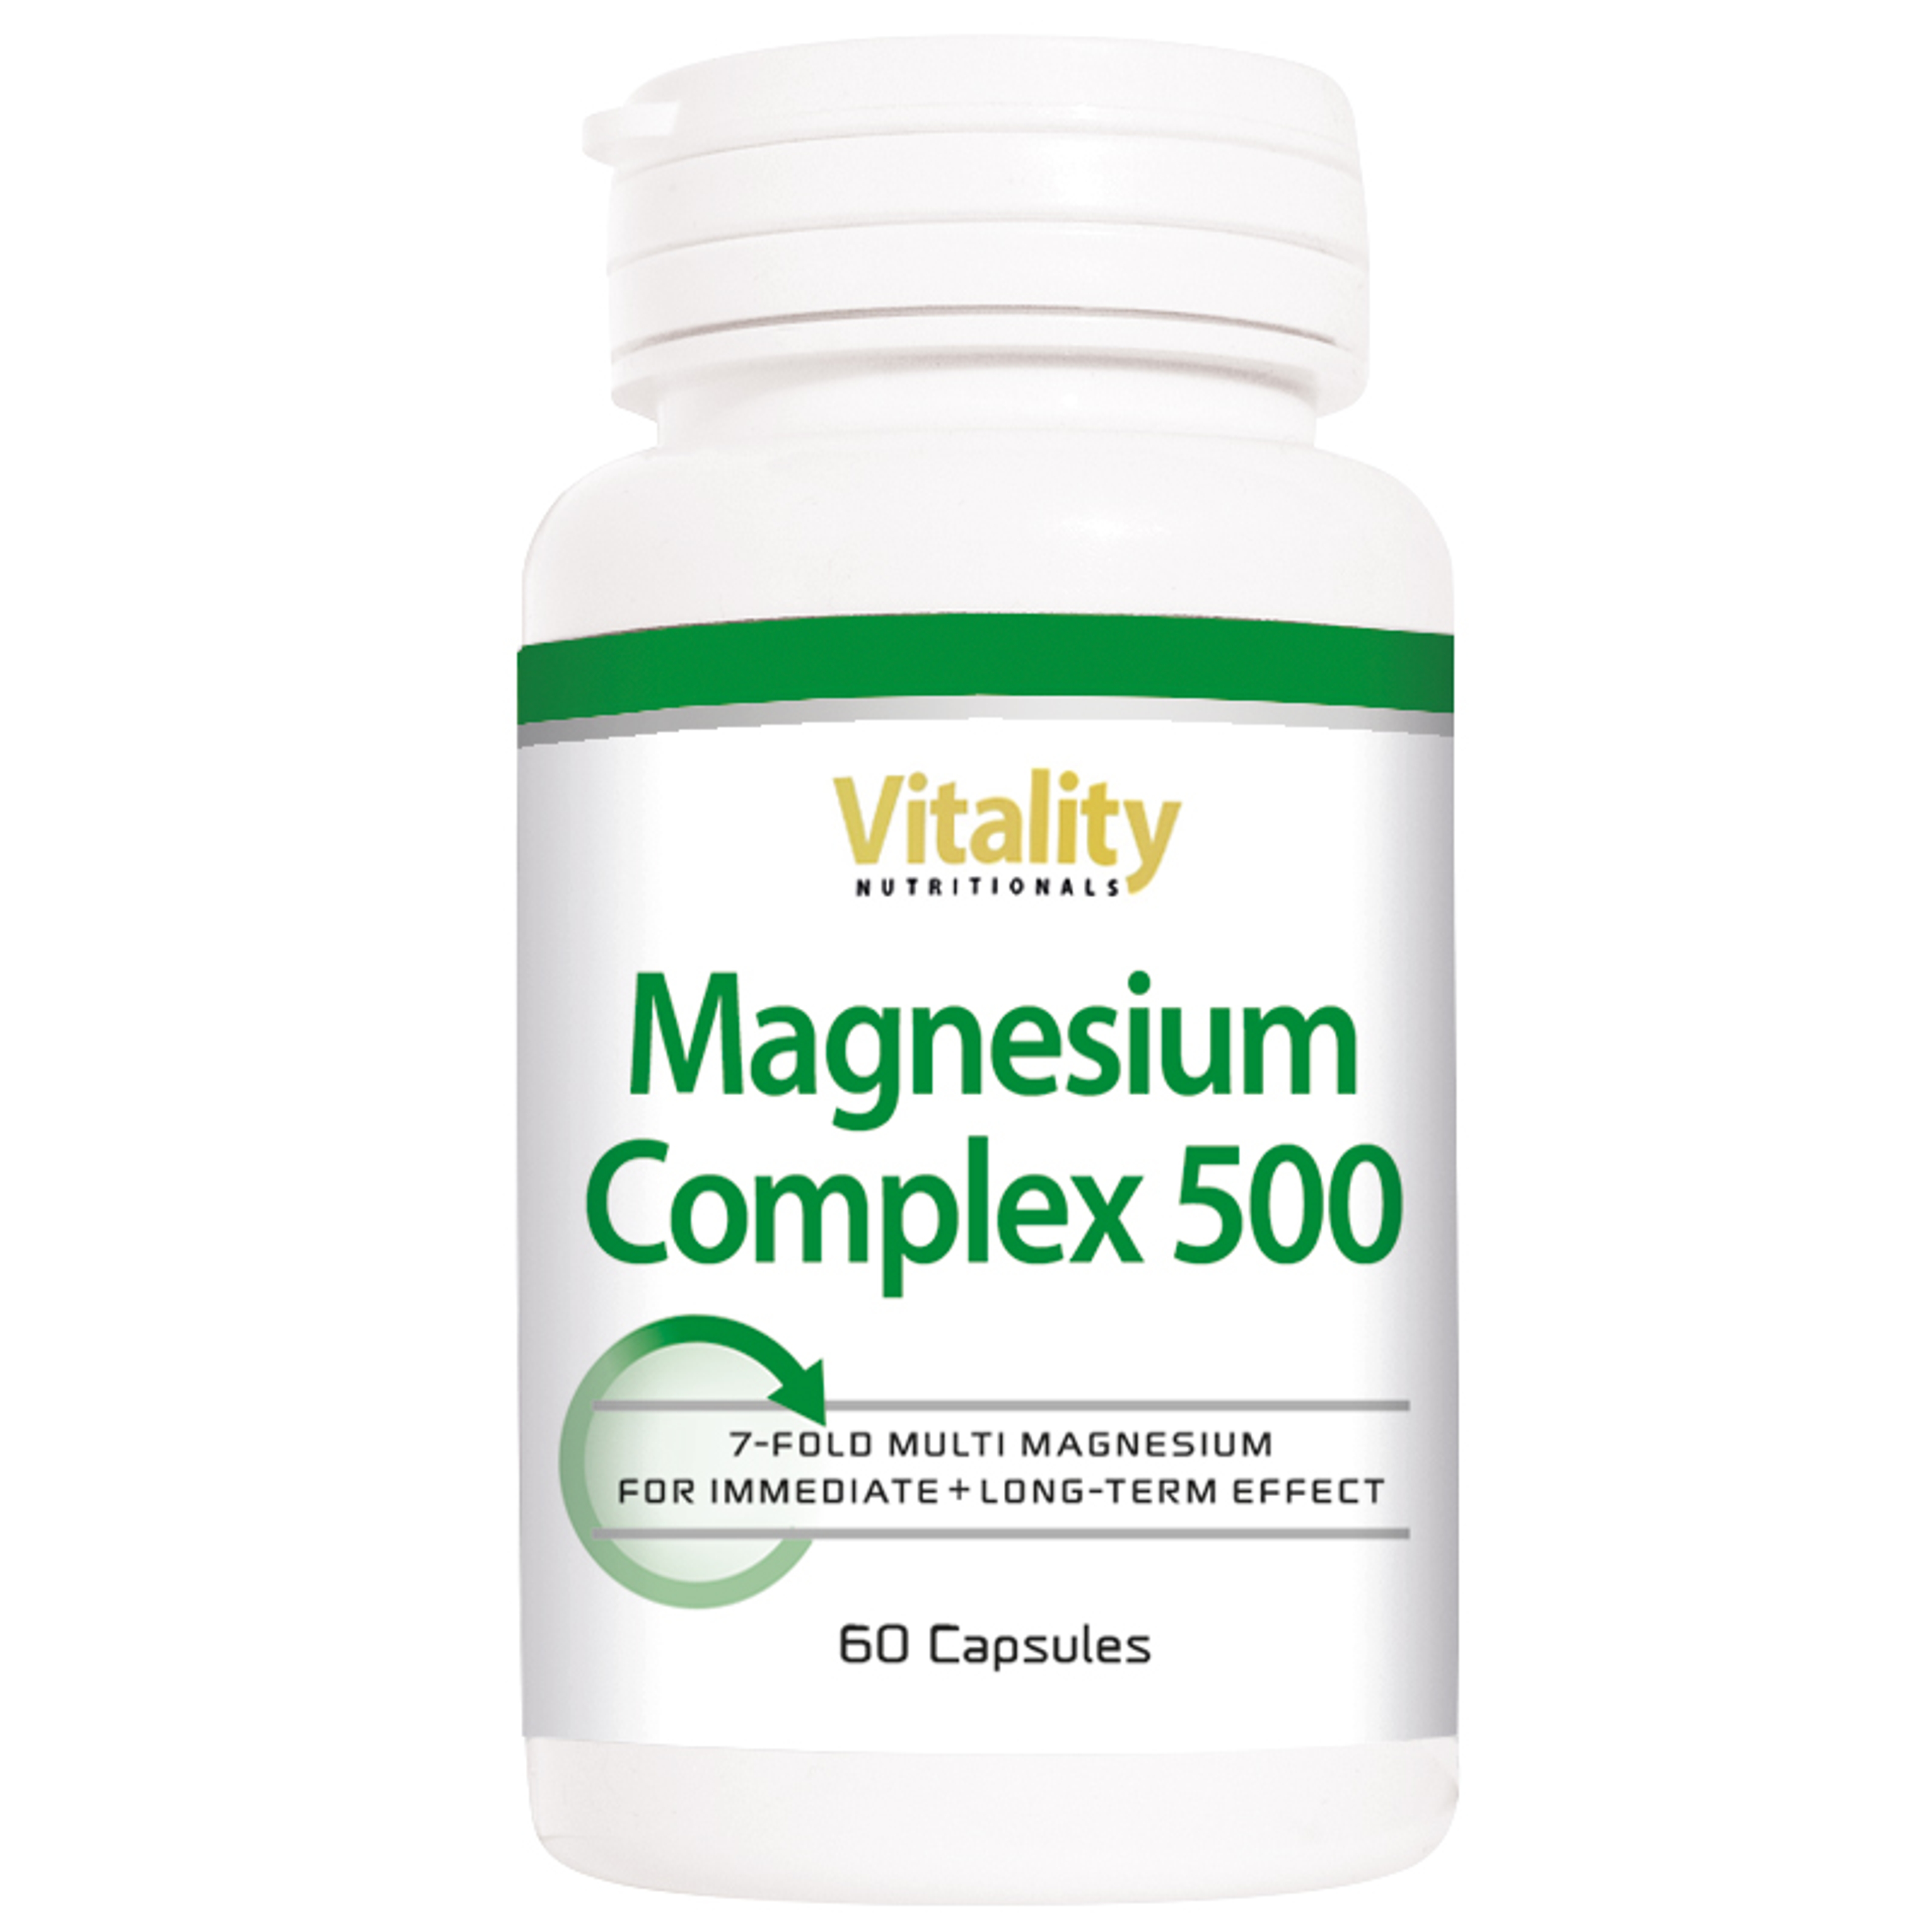 Vitality-Nutritionals-Magnesium-Complex-500_60capsules.jpg